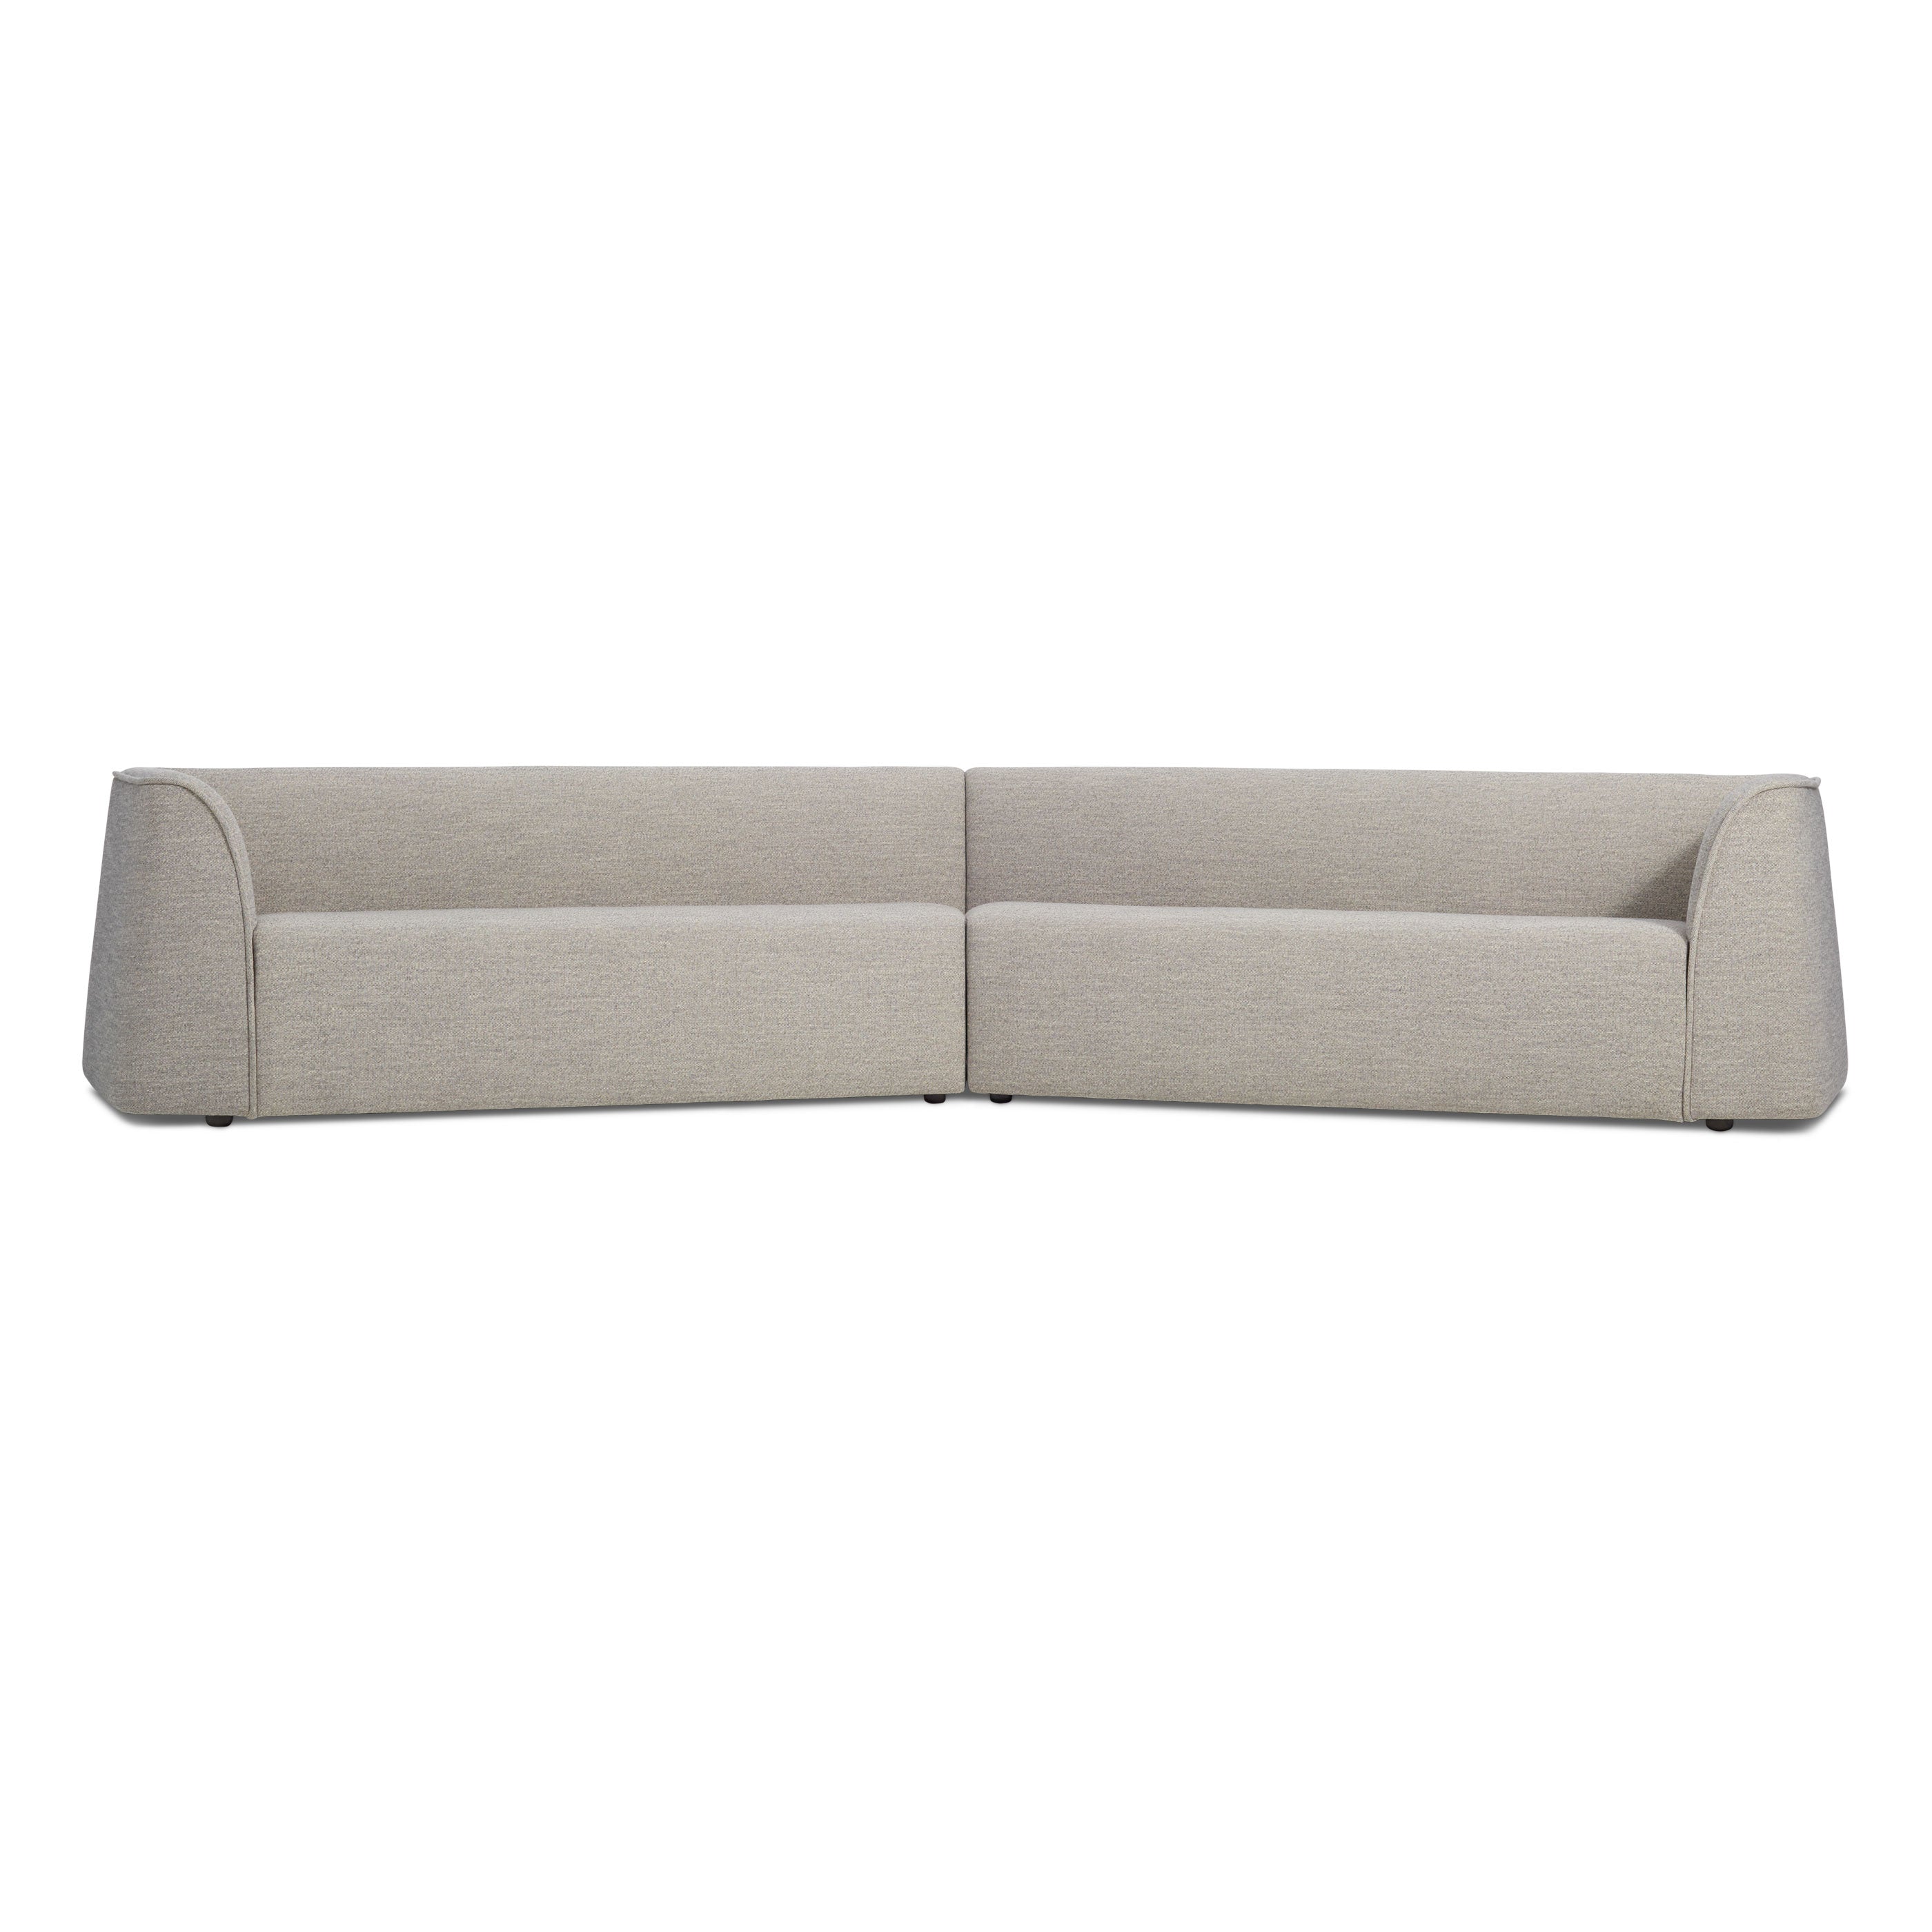 Thataway 157" Angled Sectional Sofa